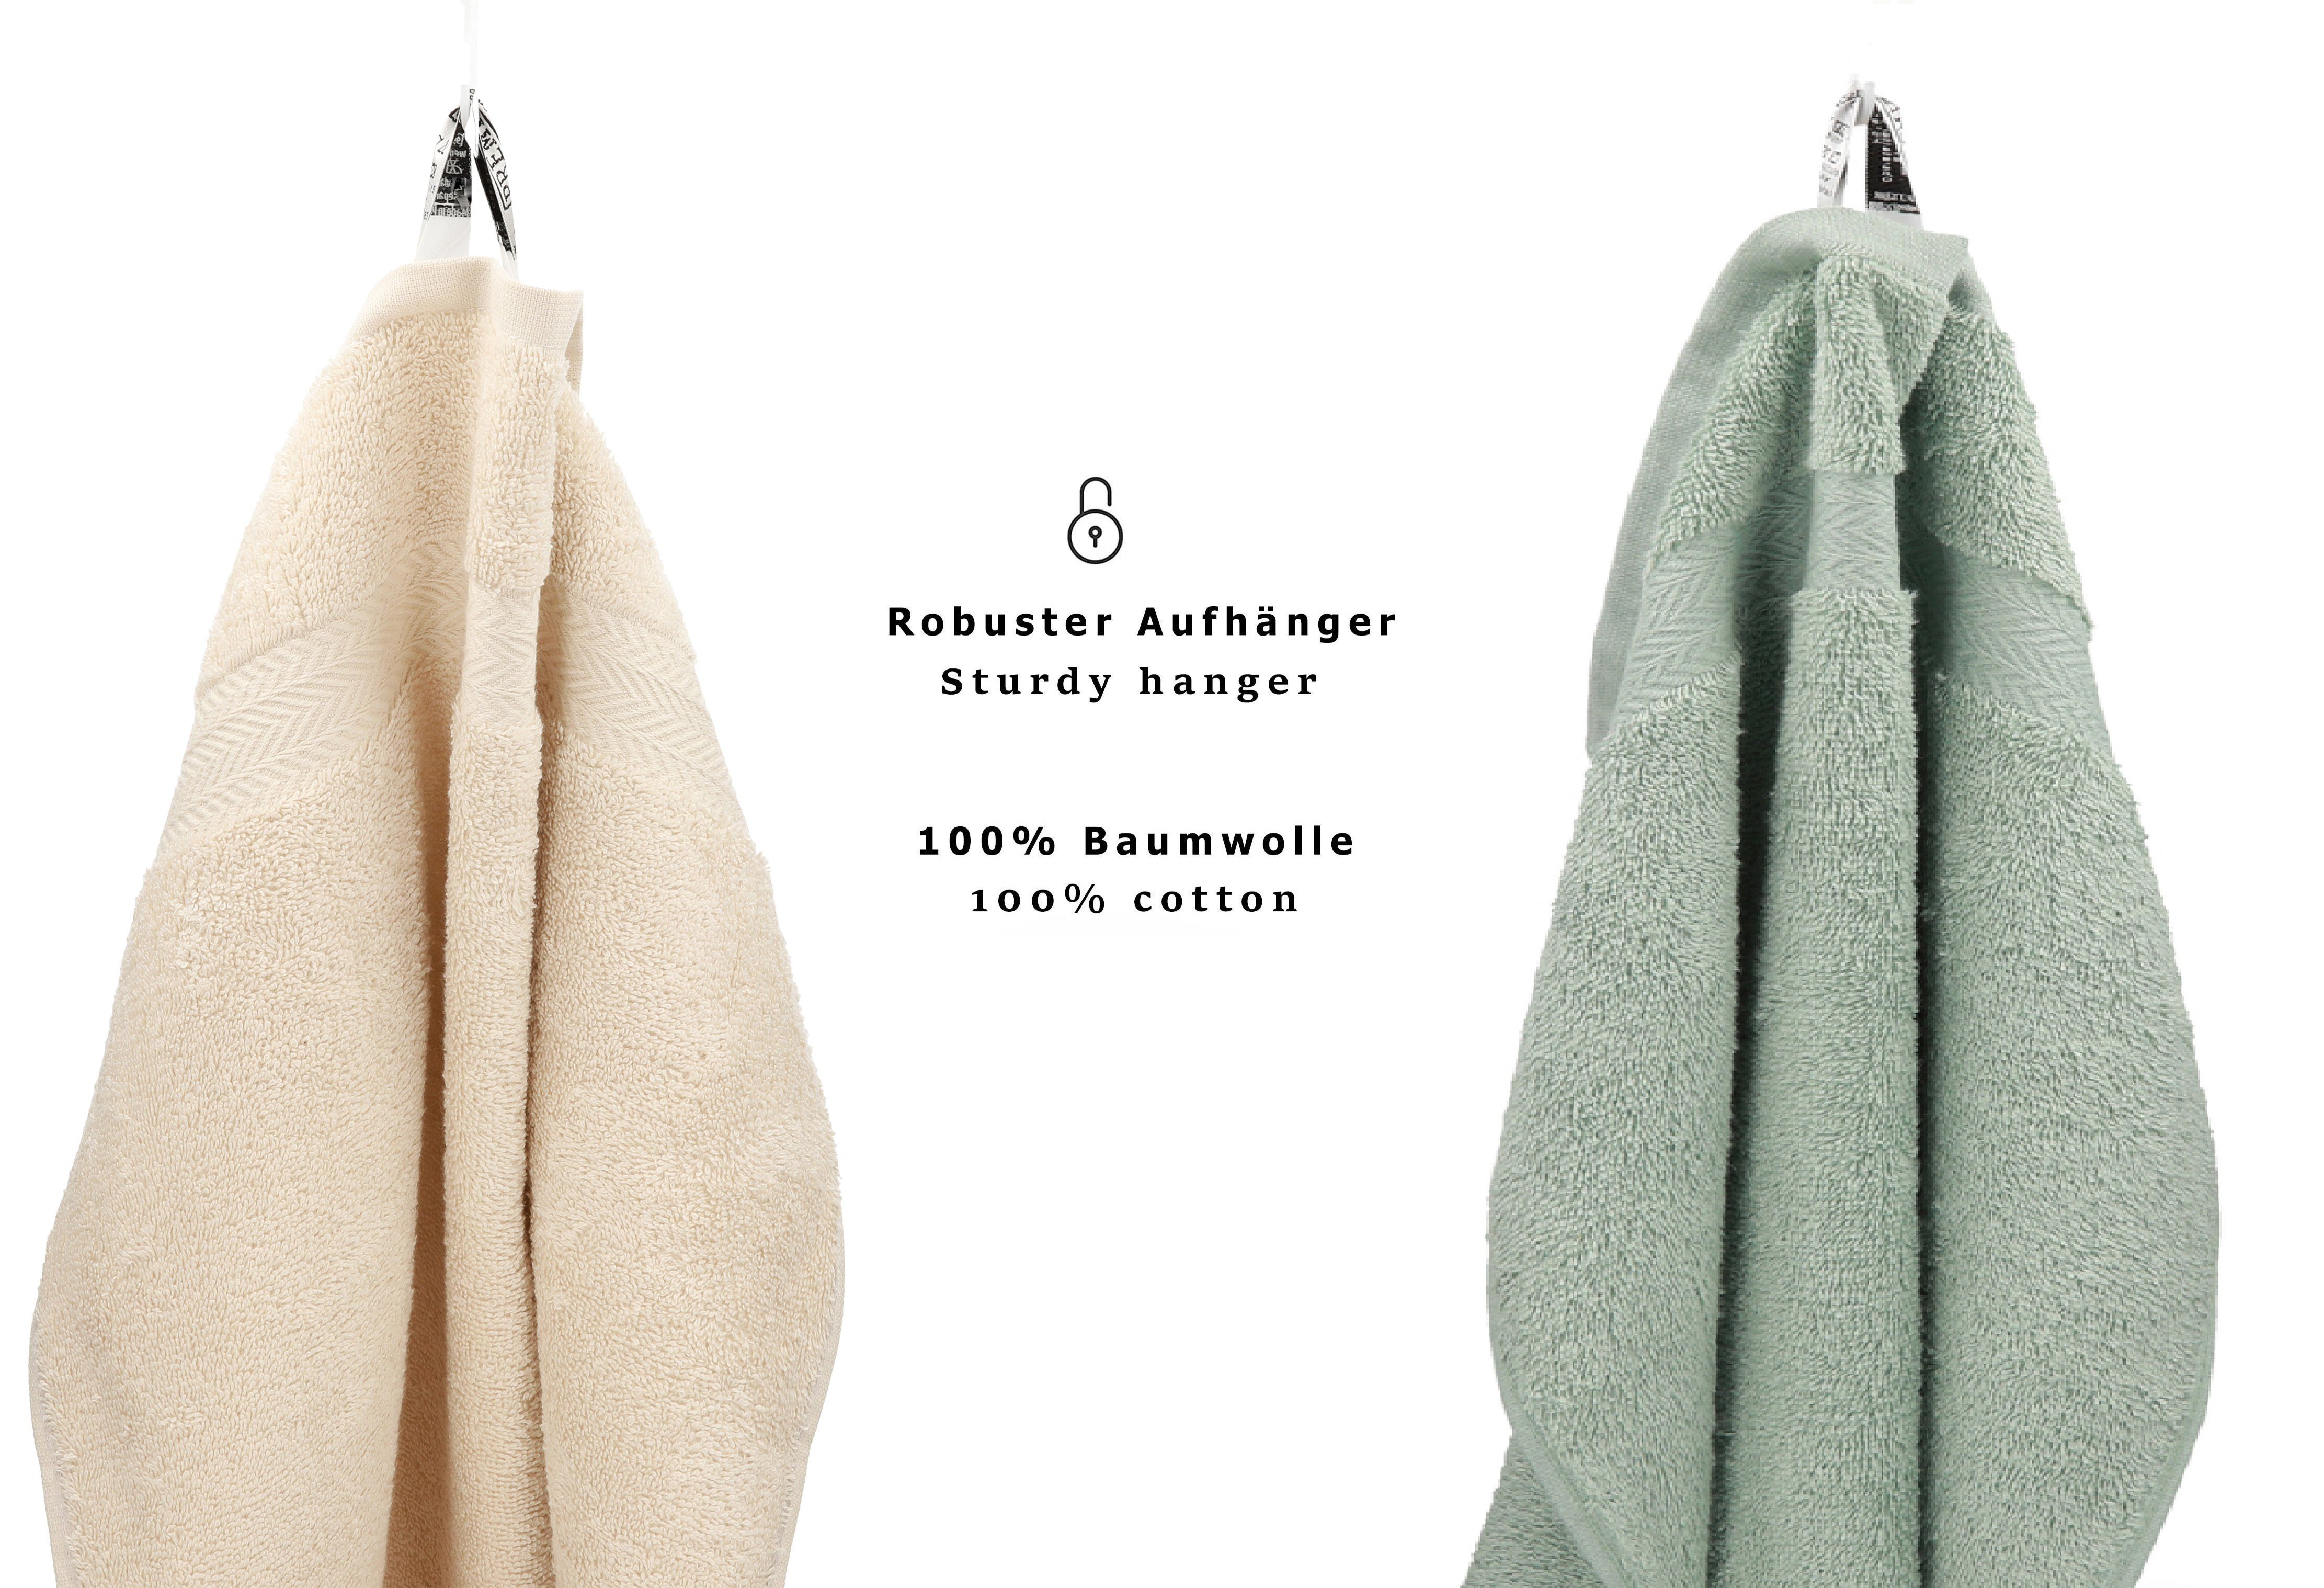 Farbe Betz Handtuch 12-tlg. (12-tlg) Handtuch 100% Set Baumwolle, Premium Set Sand/heugrün,